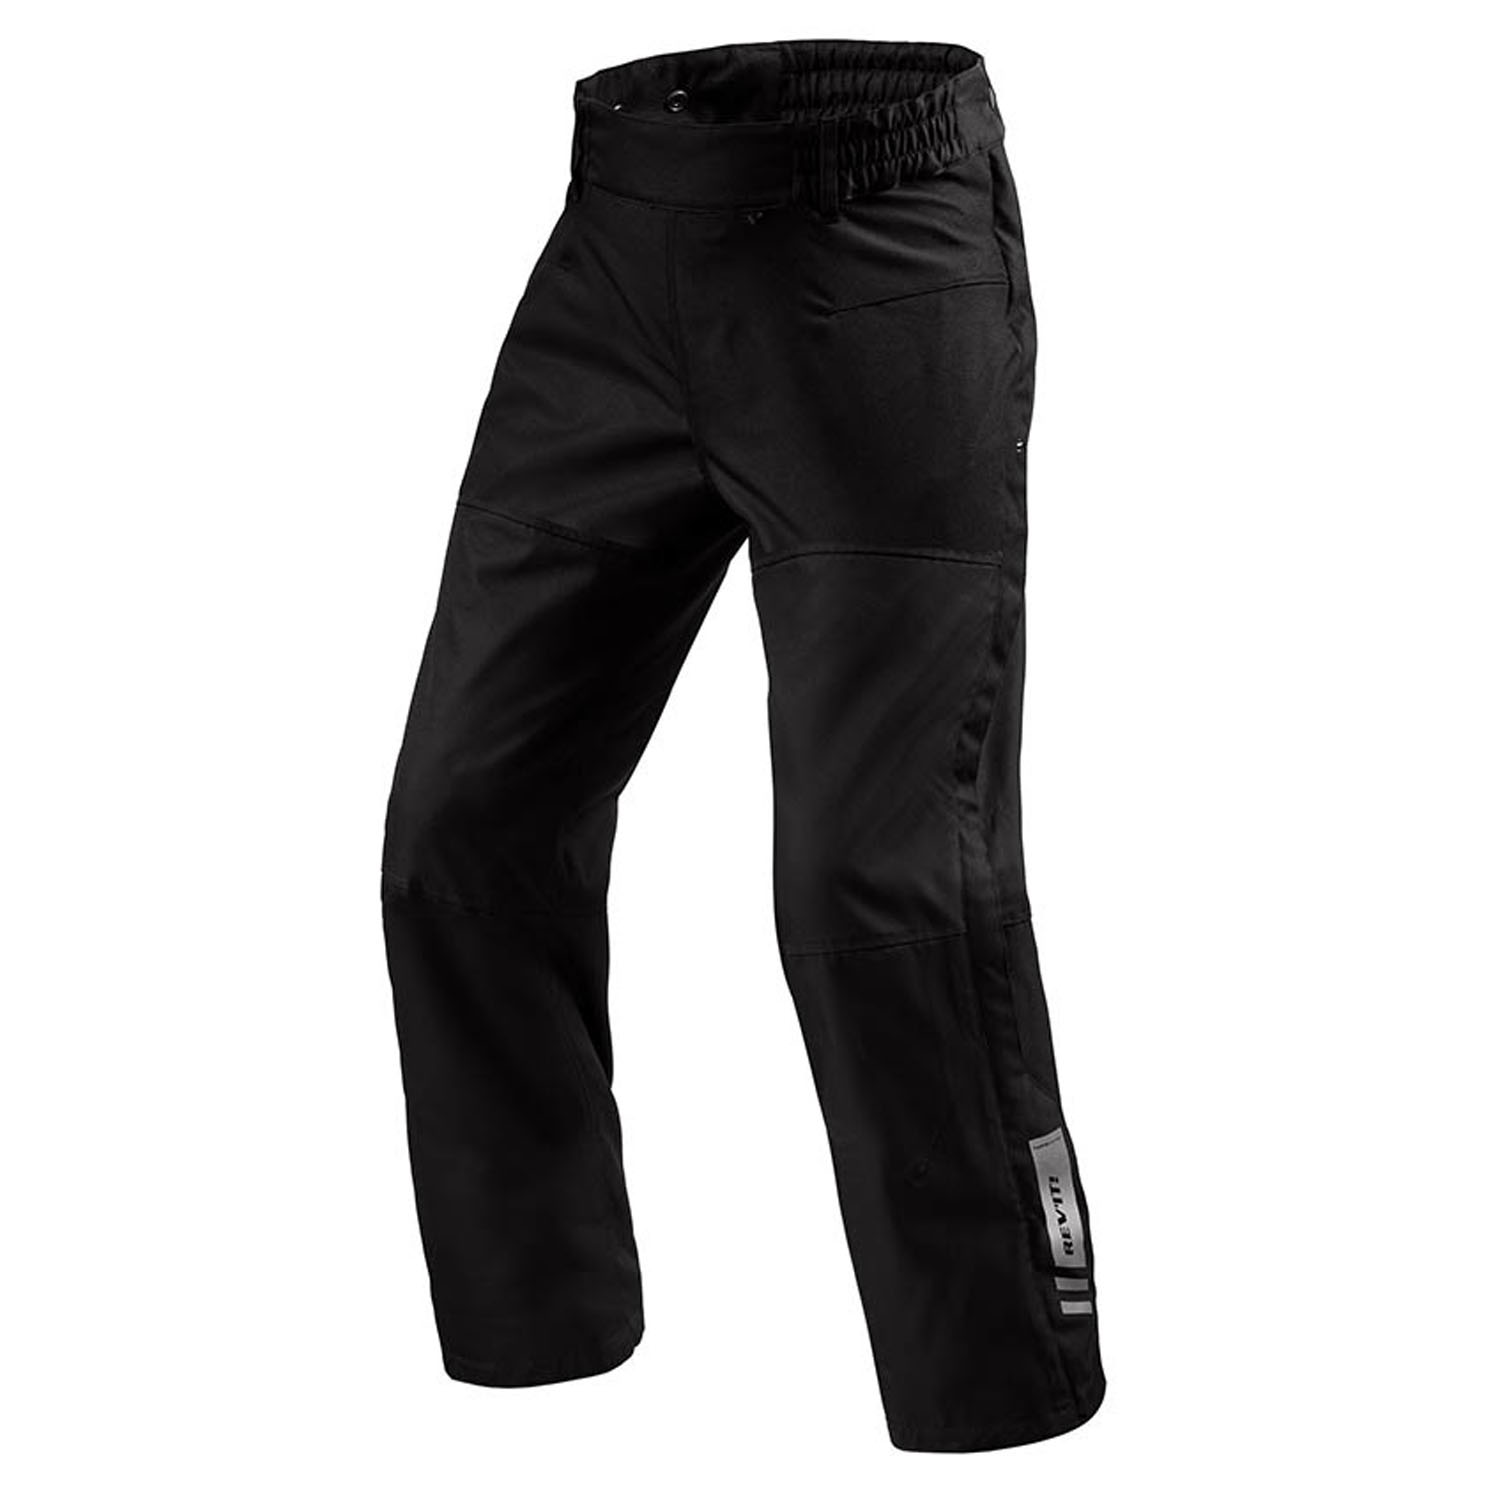 Image of REV'IT! Pants Axis 2 H2O Black Short Motorcycle Pants Talla 3XL